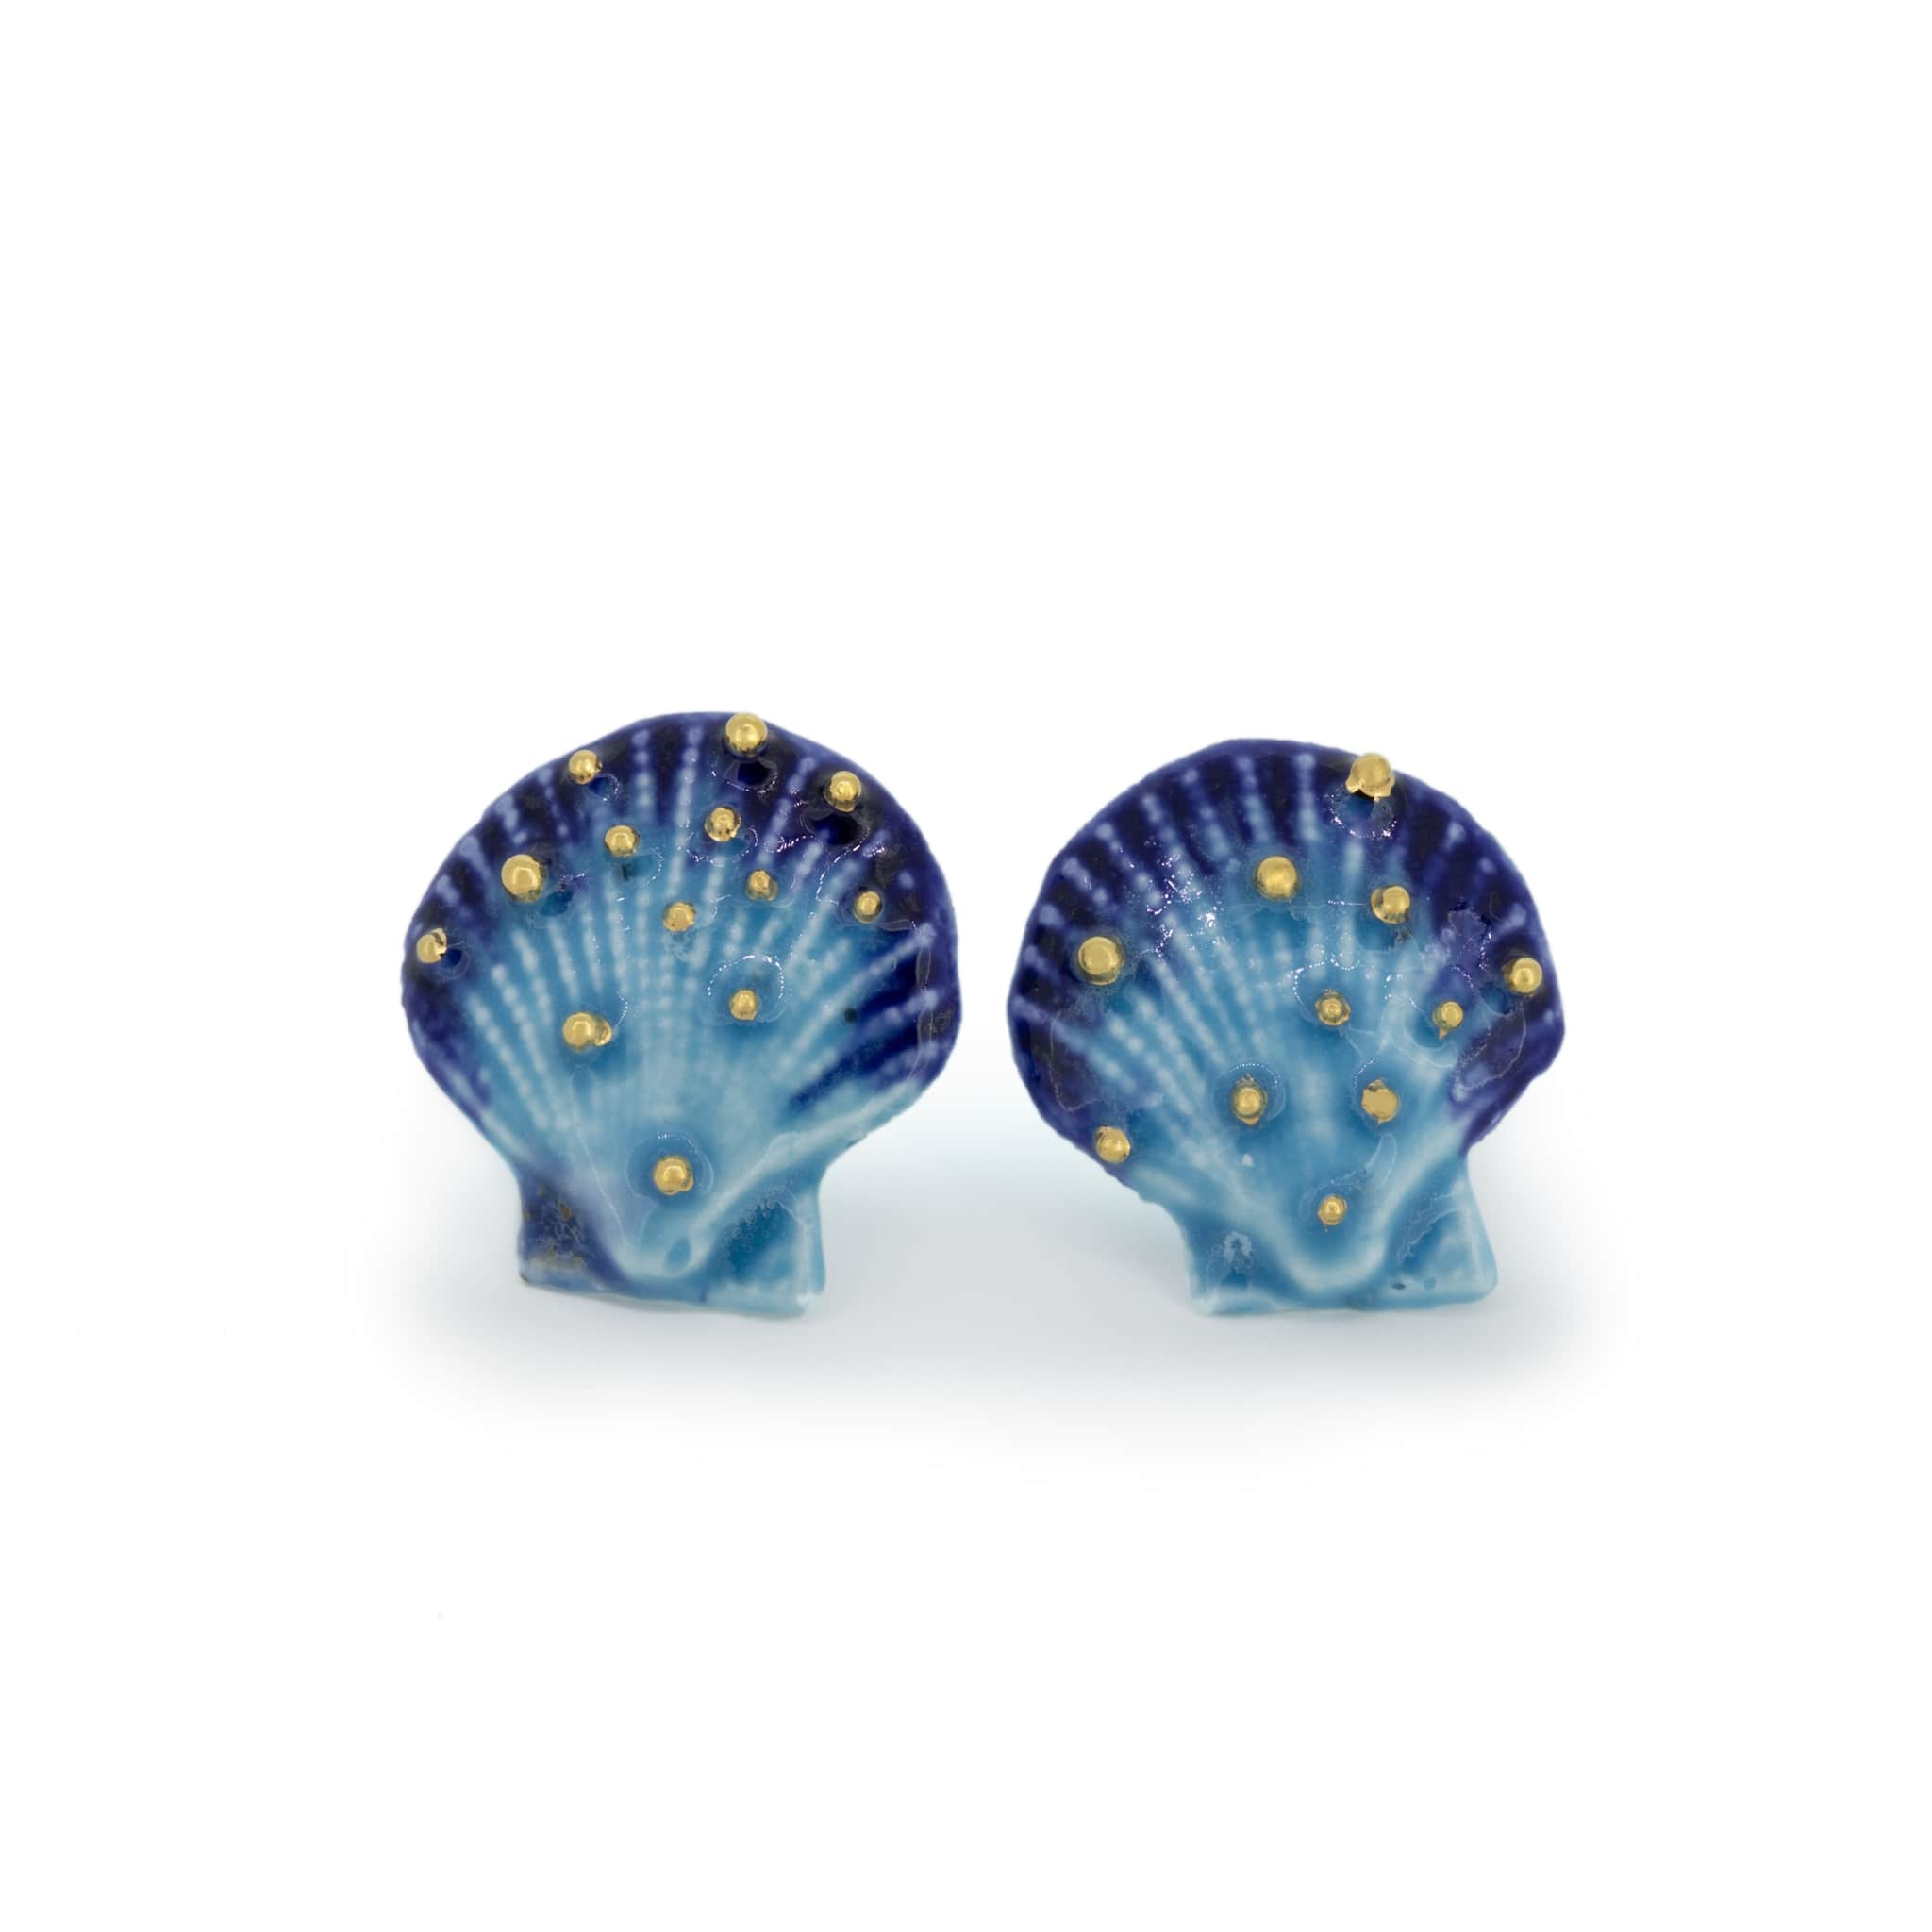 blue_seashell_stud_earrings_with_gold_bubbles-min.jpg